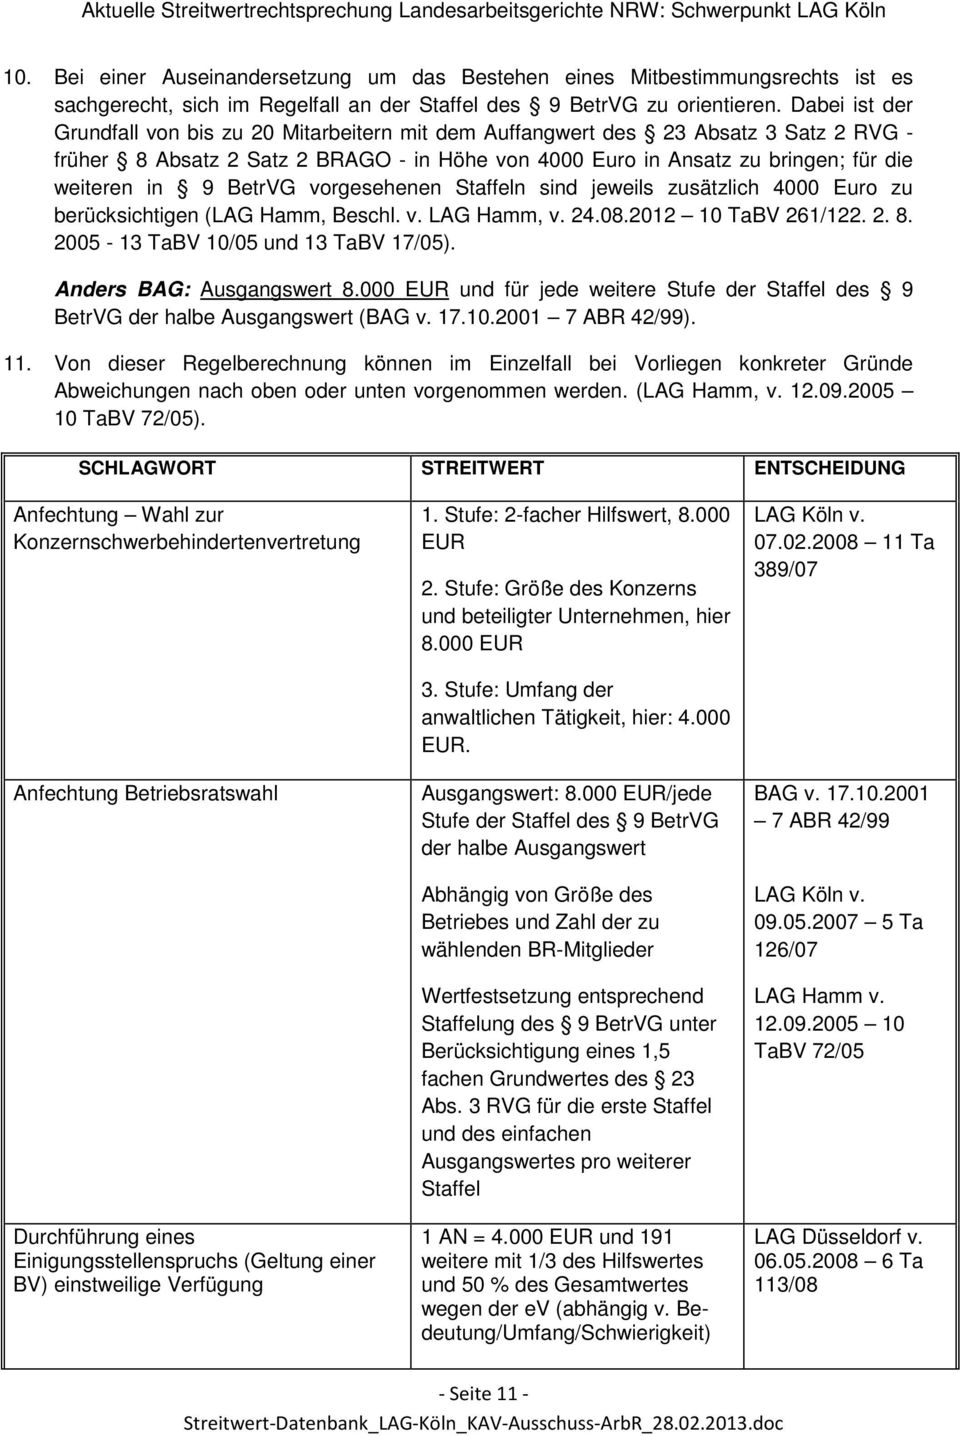 BetrVG vorgesehenen Staffeln sind jeweils zusätzlich 4000 Euro zu berücksichtigen (LAG Hamm, Beschl. v. LAG Hamm, v. 24.08.2012 10 TaBV 261/122. 2. 8. 2005-13 TaBV 10/05 und 13 TaBV 17/05).